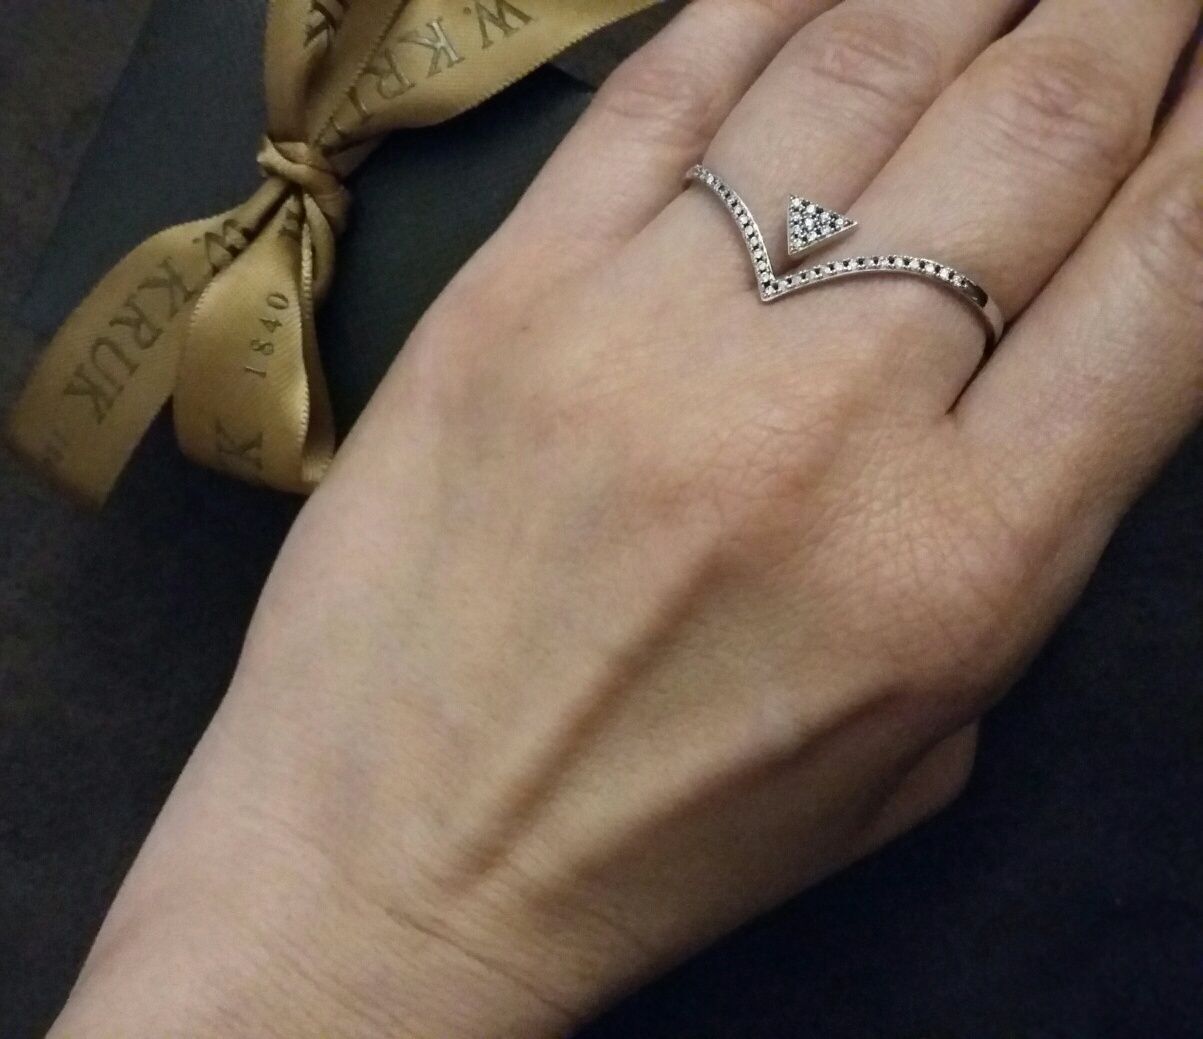 NOWY W.Kruk pierścionek na dwa palce srebro 925 z metką r. 12 cyrkonie